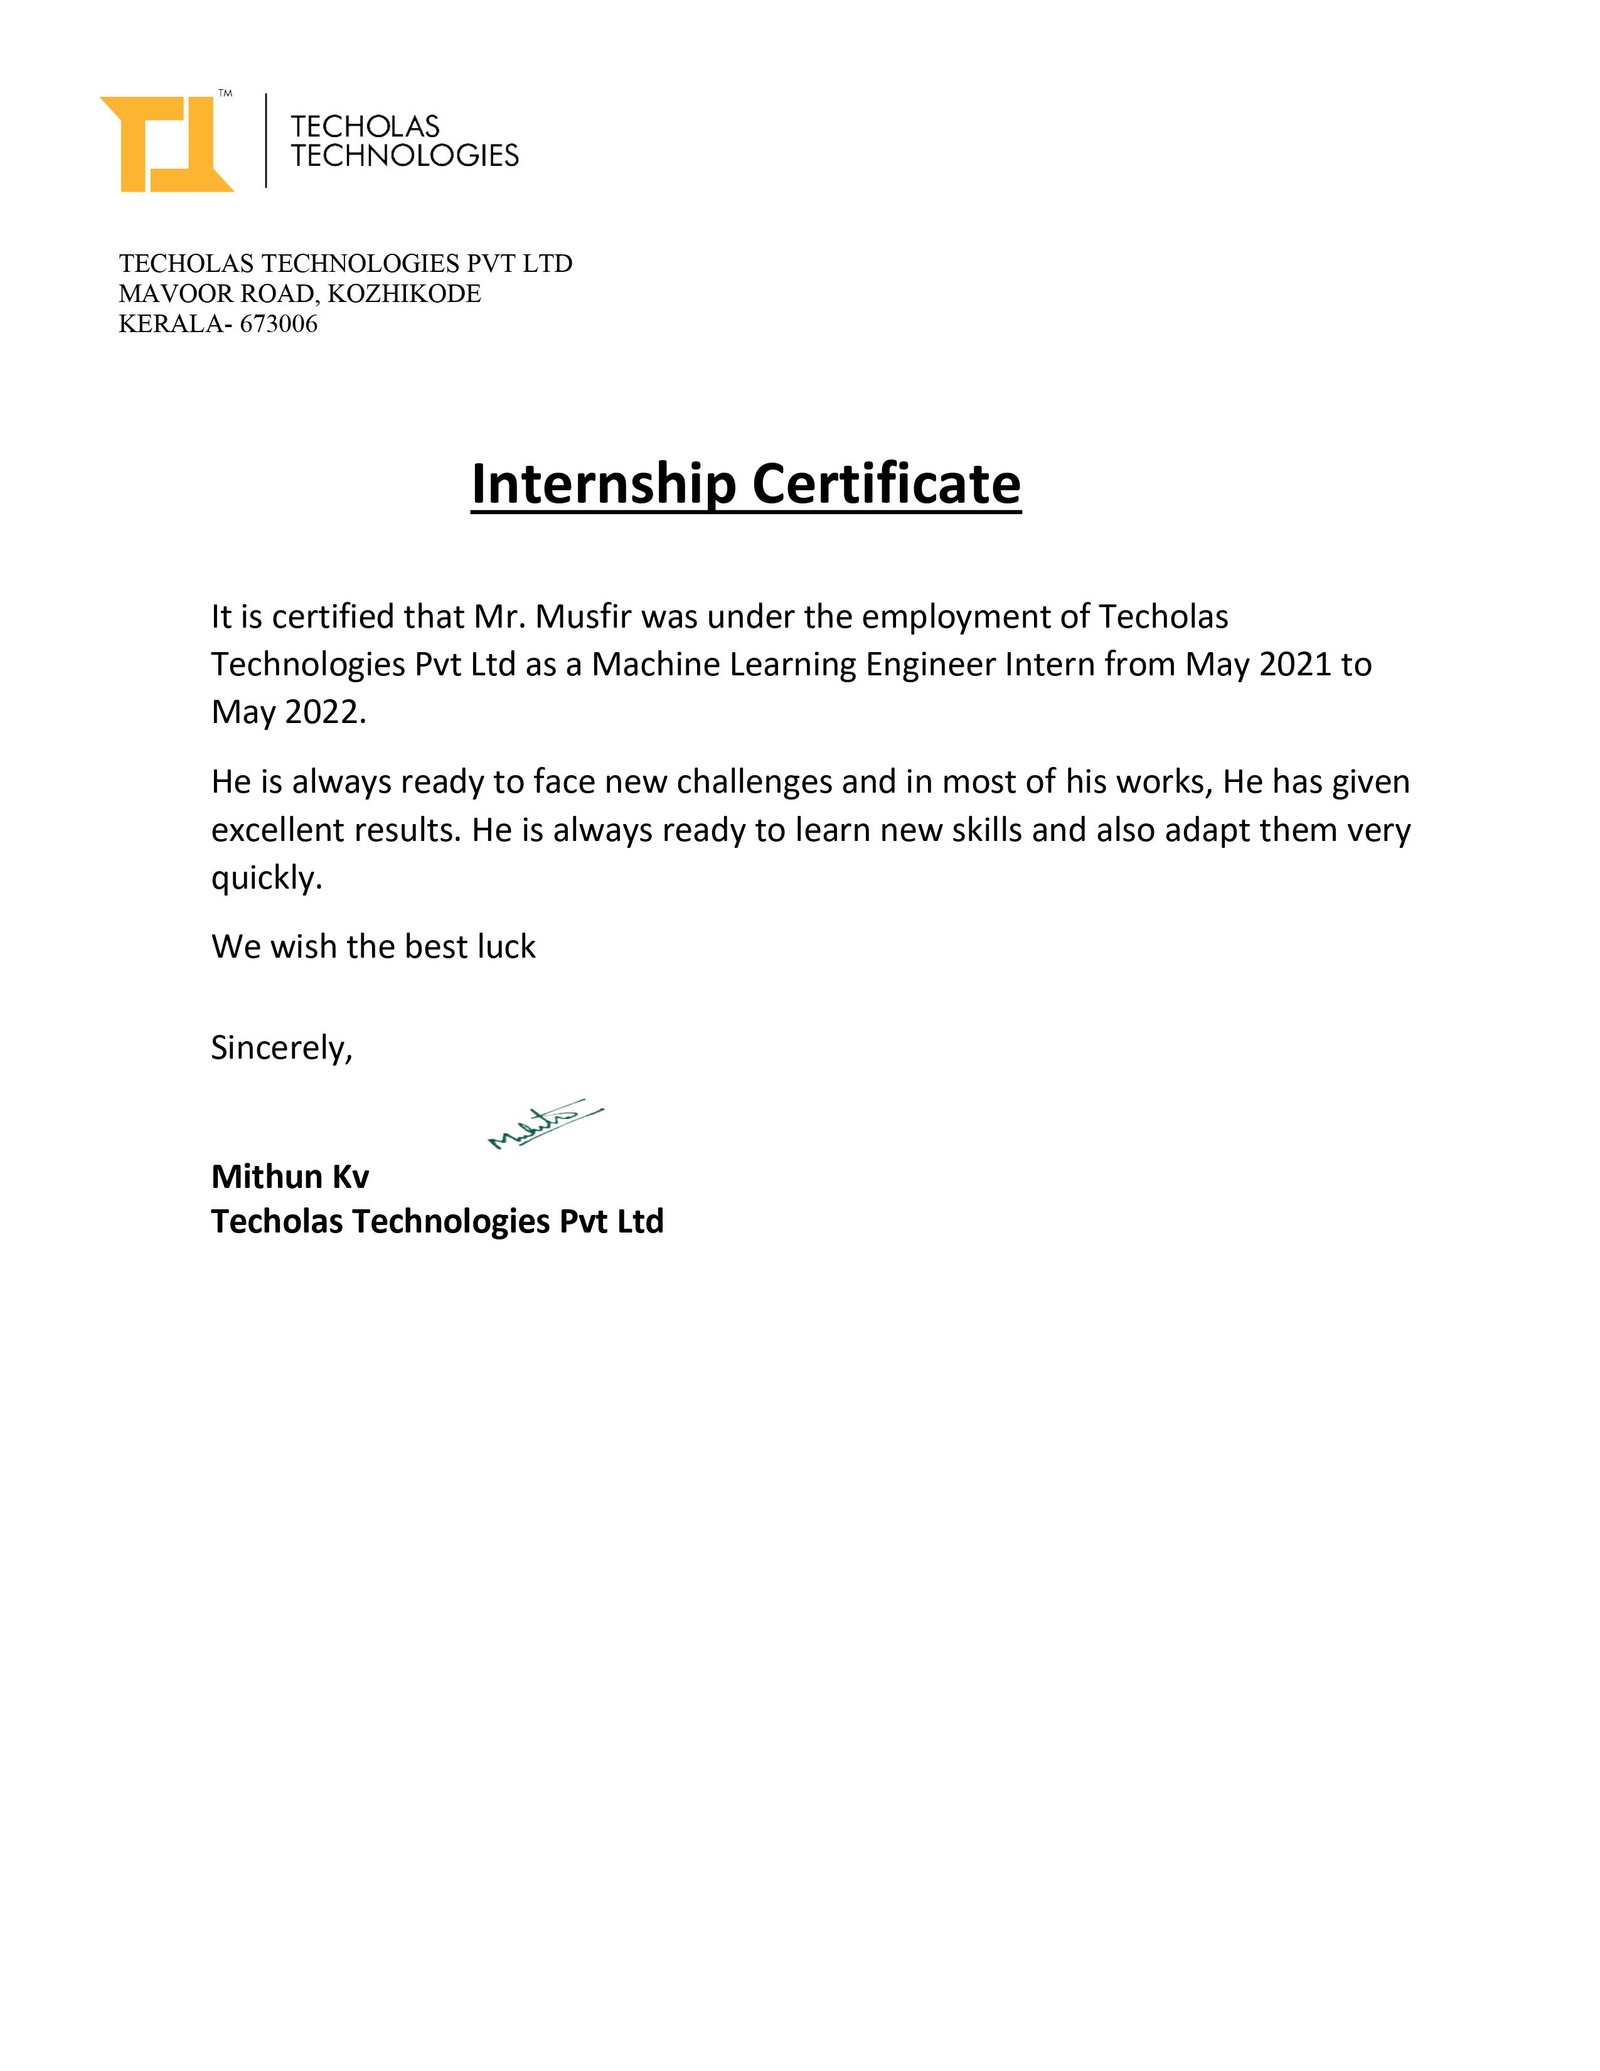 Data Science Intership Certificate in Kochi and Calicut